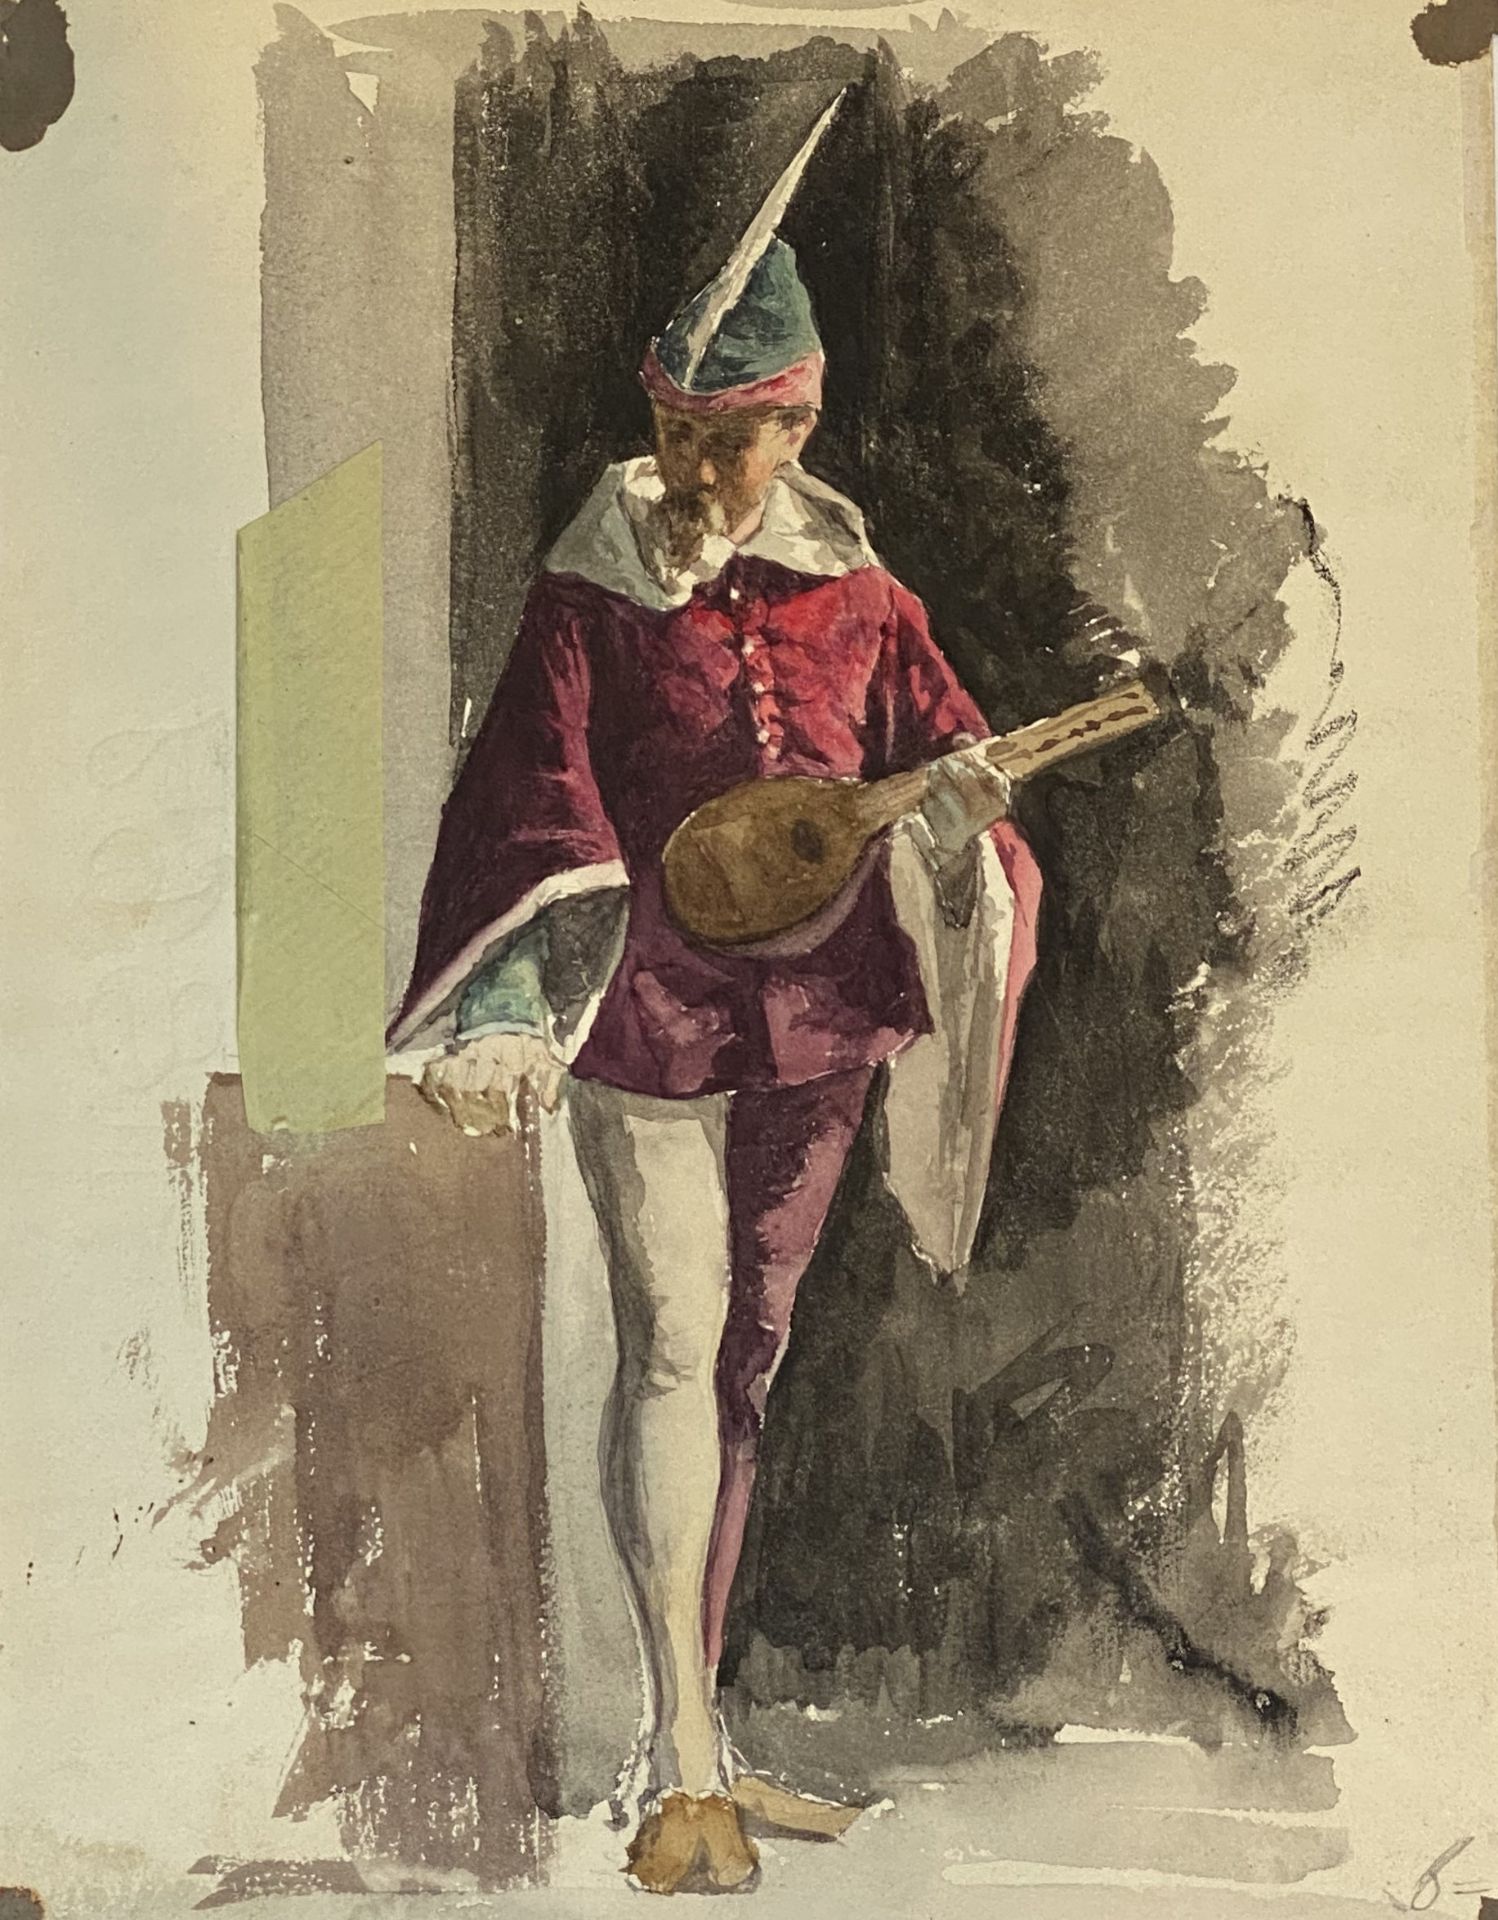 Paar Charakter - Bildnisse 19. Jahrhundert Harlekin, Memento Mori) - Image 2 of 3